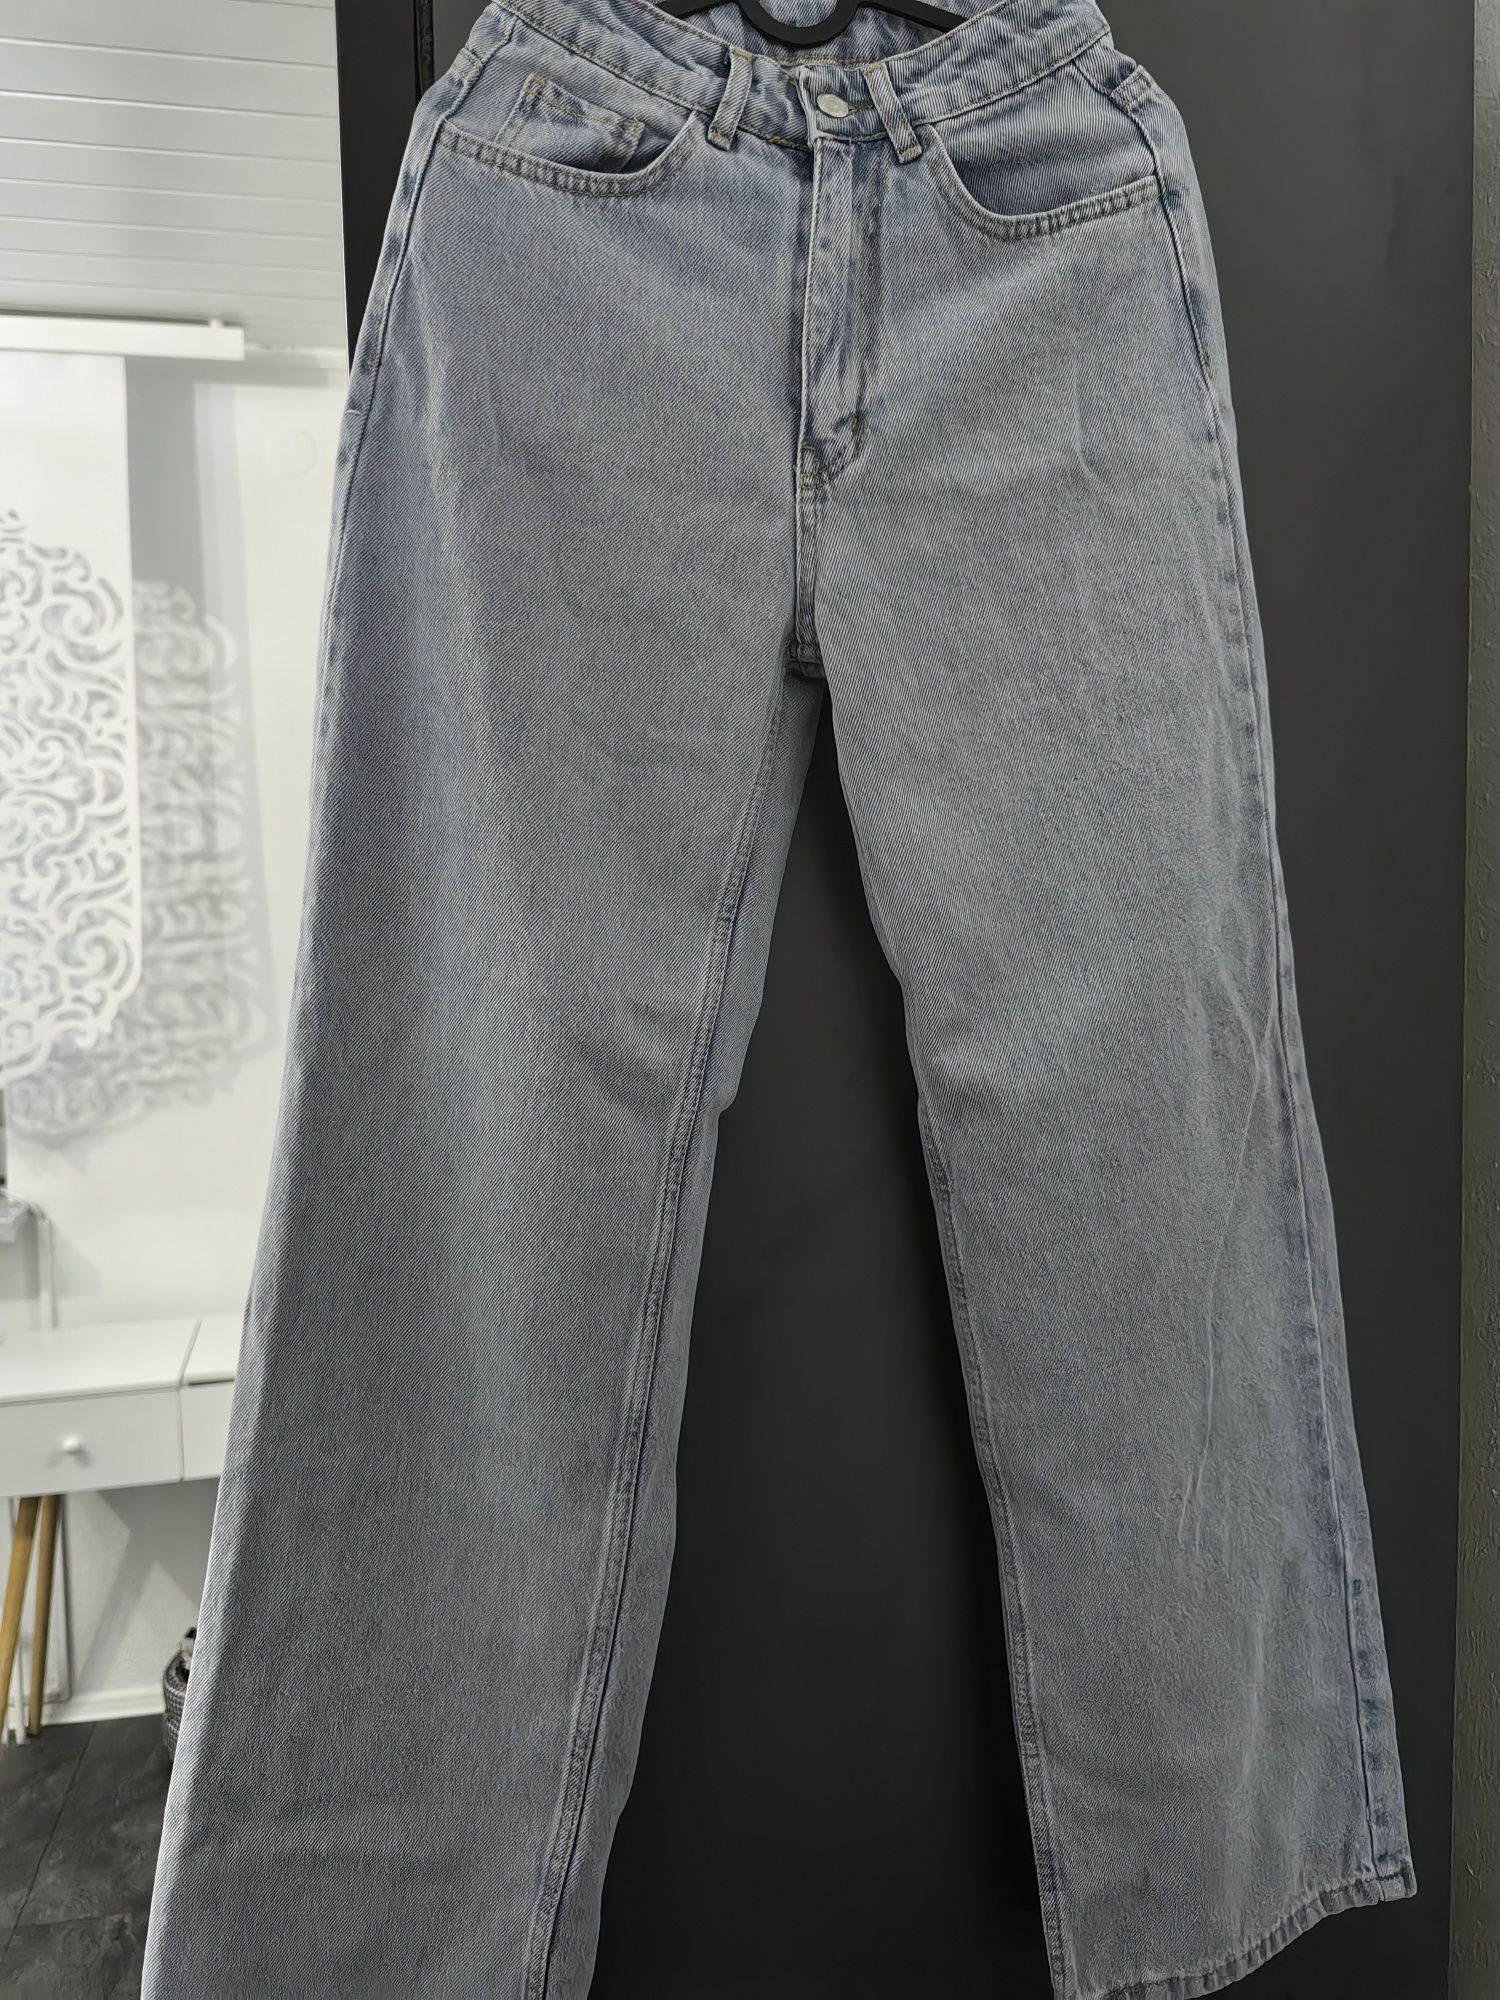 Spodnie jeansowe damskie nowe rozmiar 34